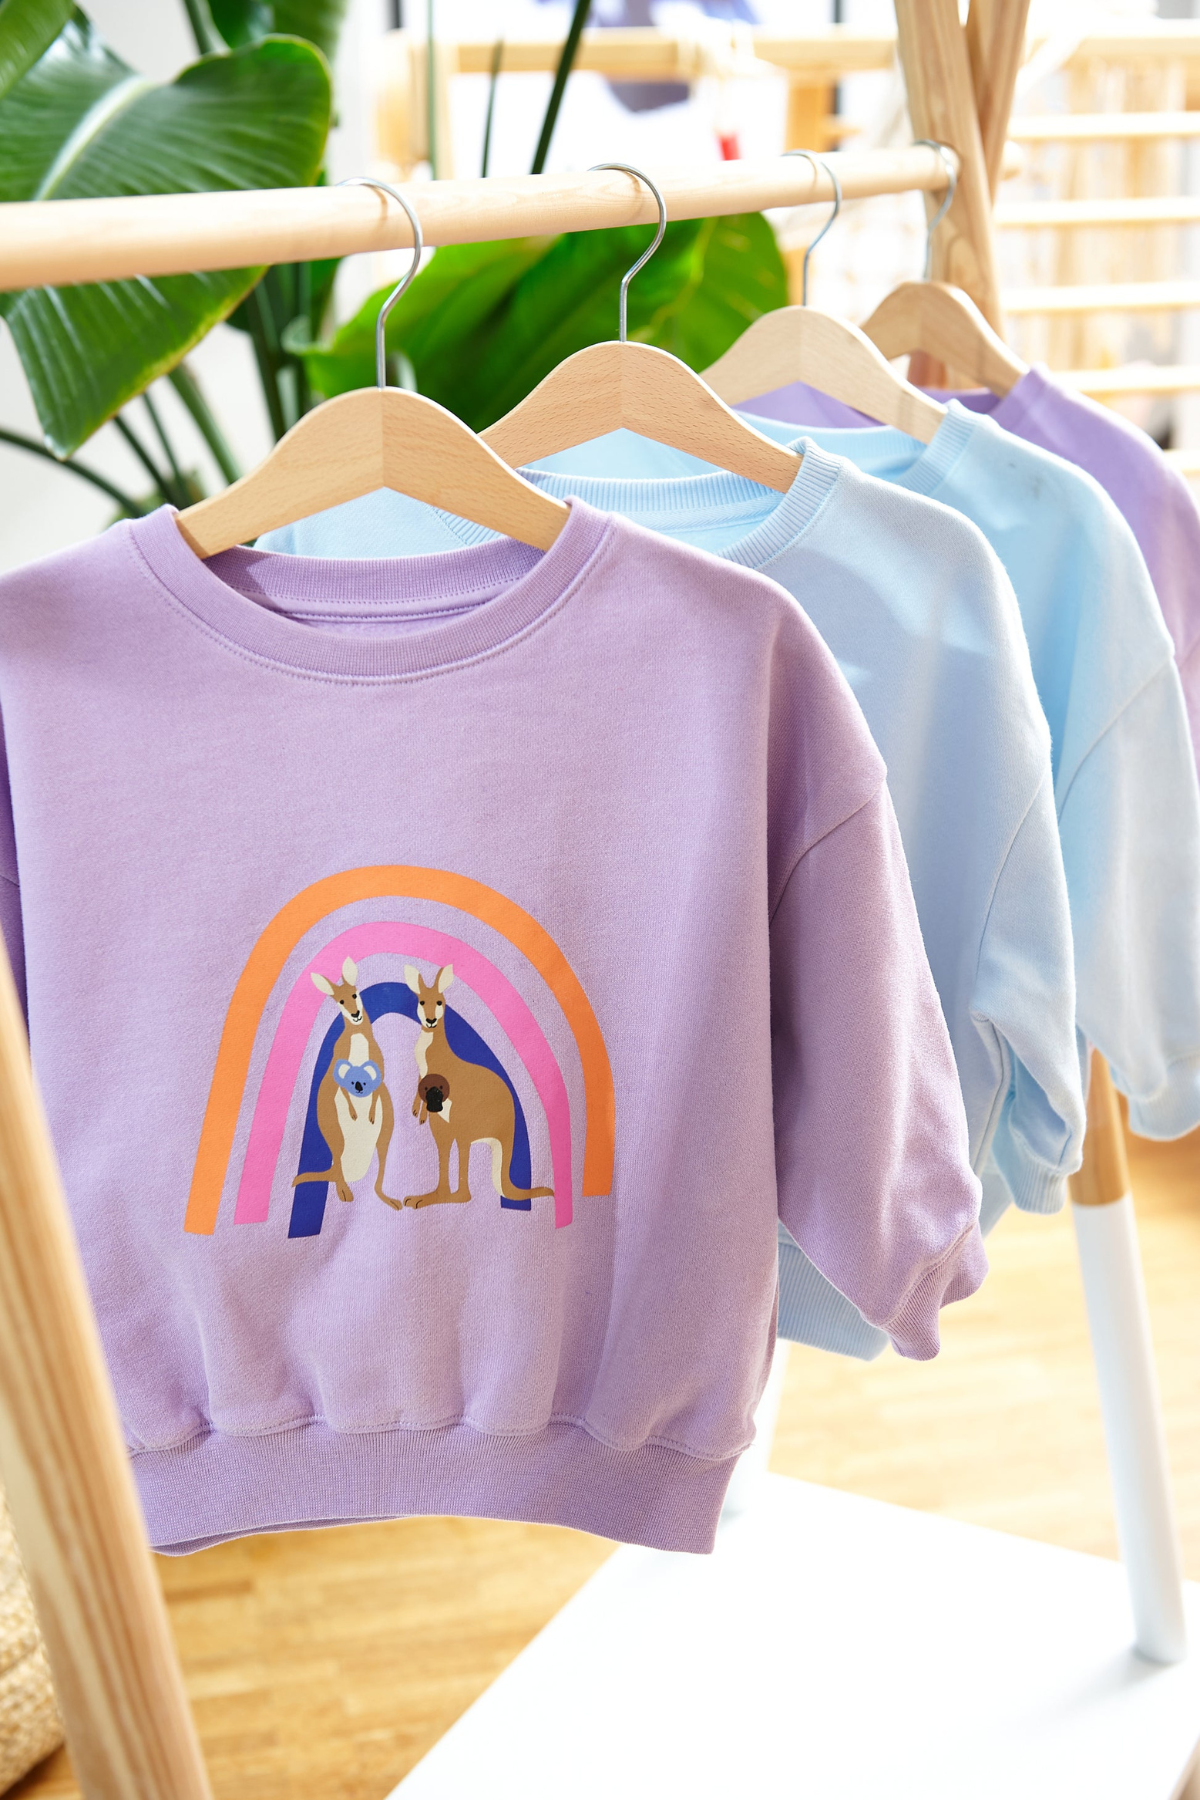 Sweatshirt “Regenbogenfamilie”